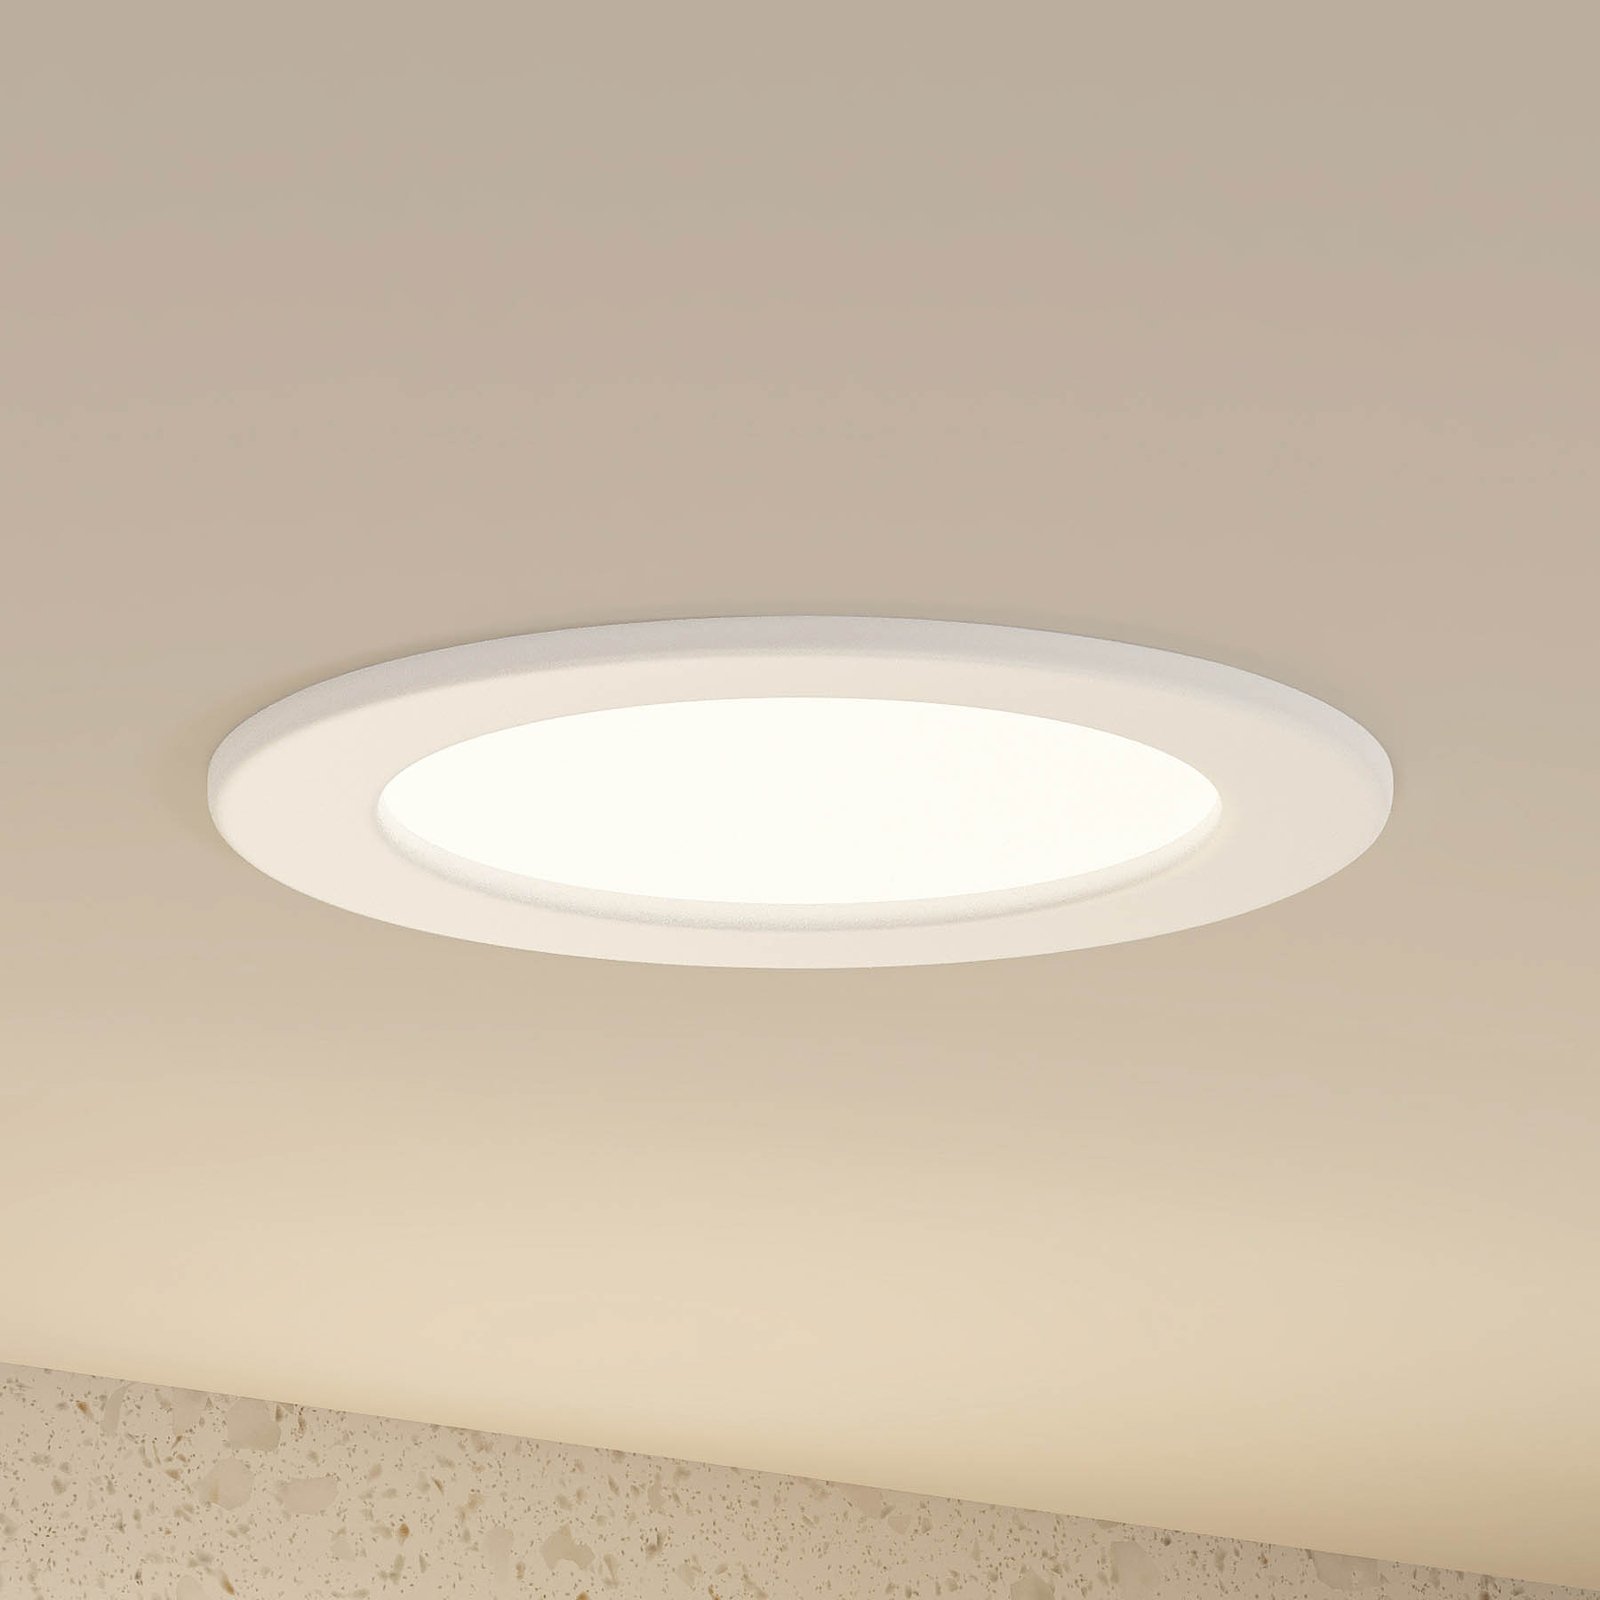 Prios Cadance lámpara empotrada LED blanco 17 cm